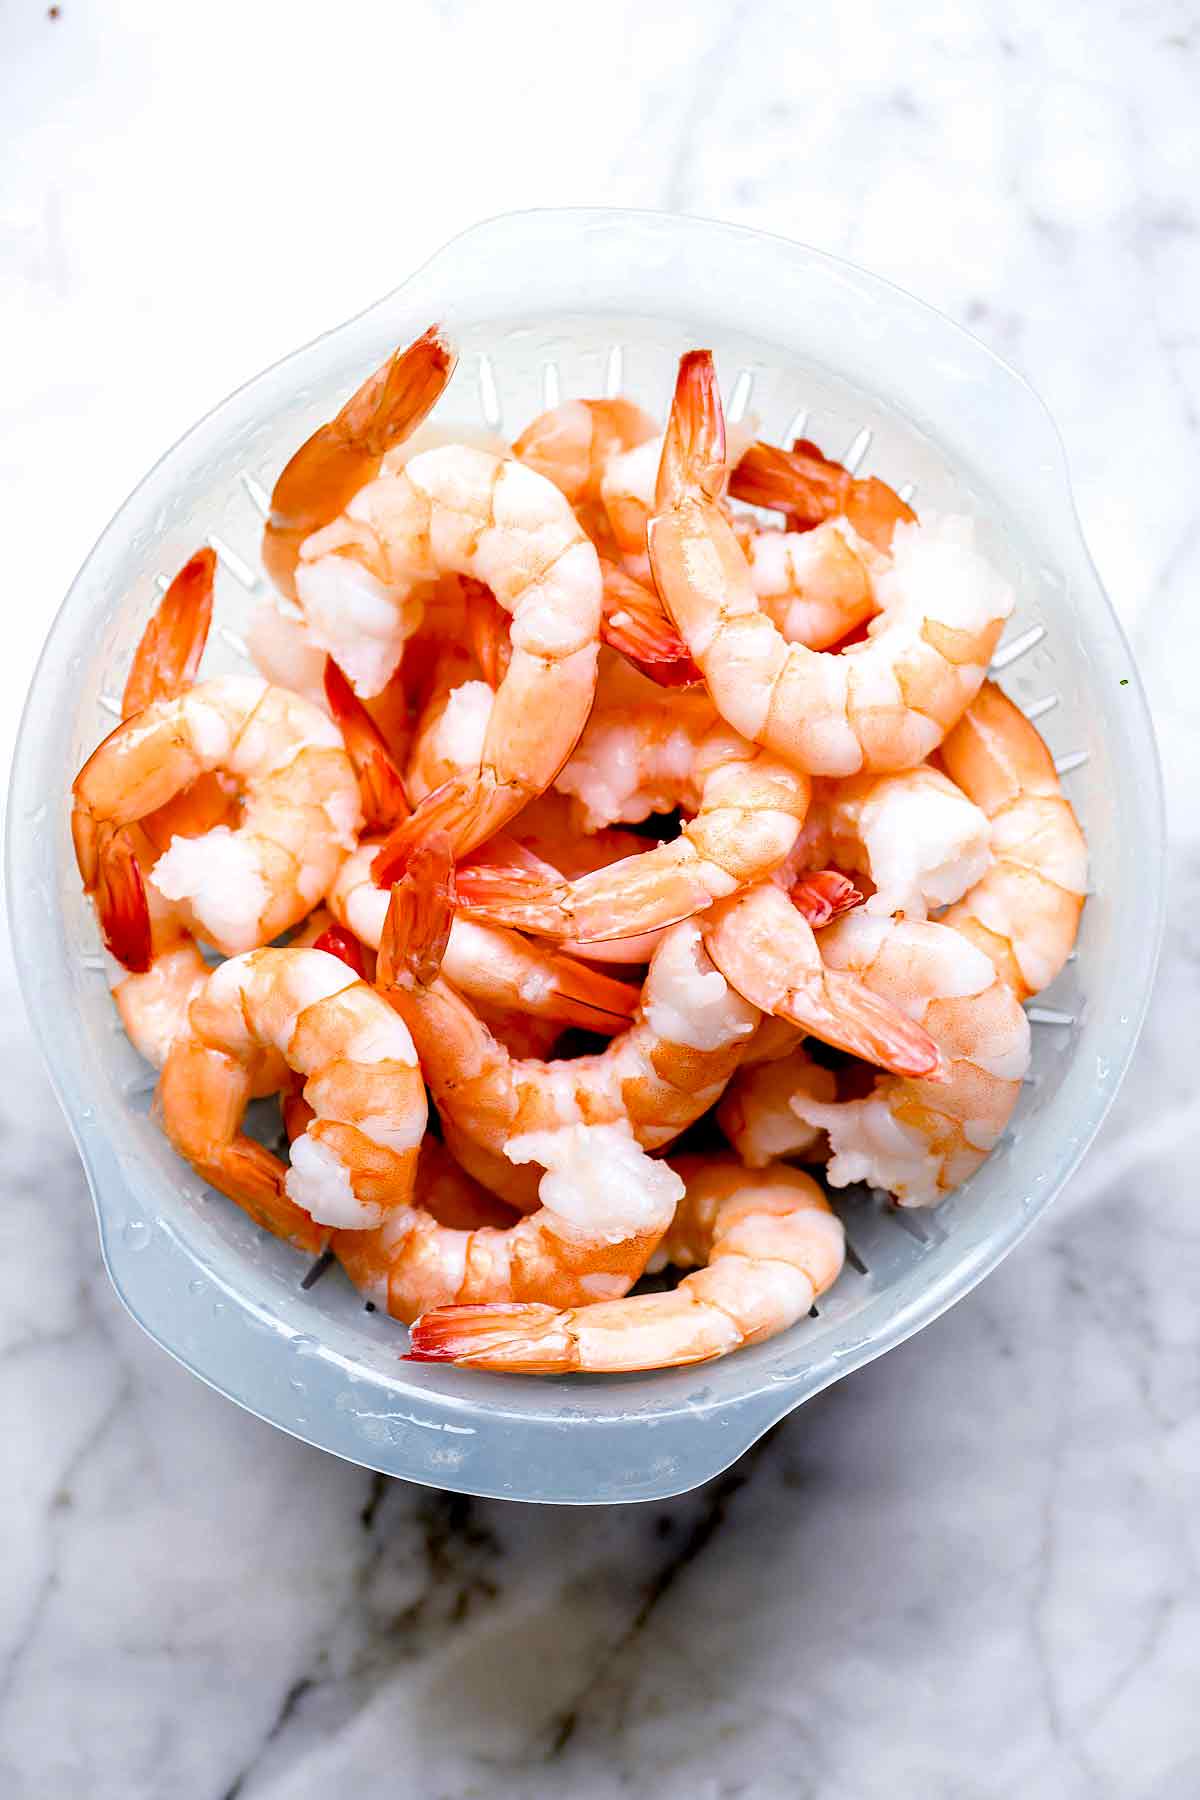 https://www.foodiecrush.com/wp-content/uploads/2018/12/Shrimp-foodiecrush.com-003.jpg